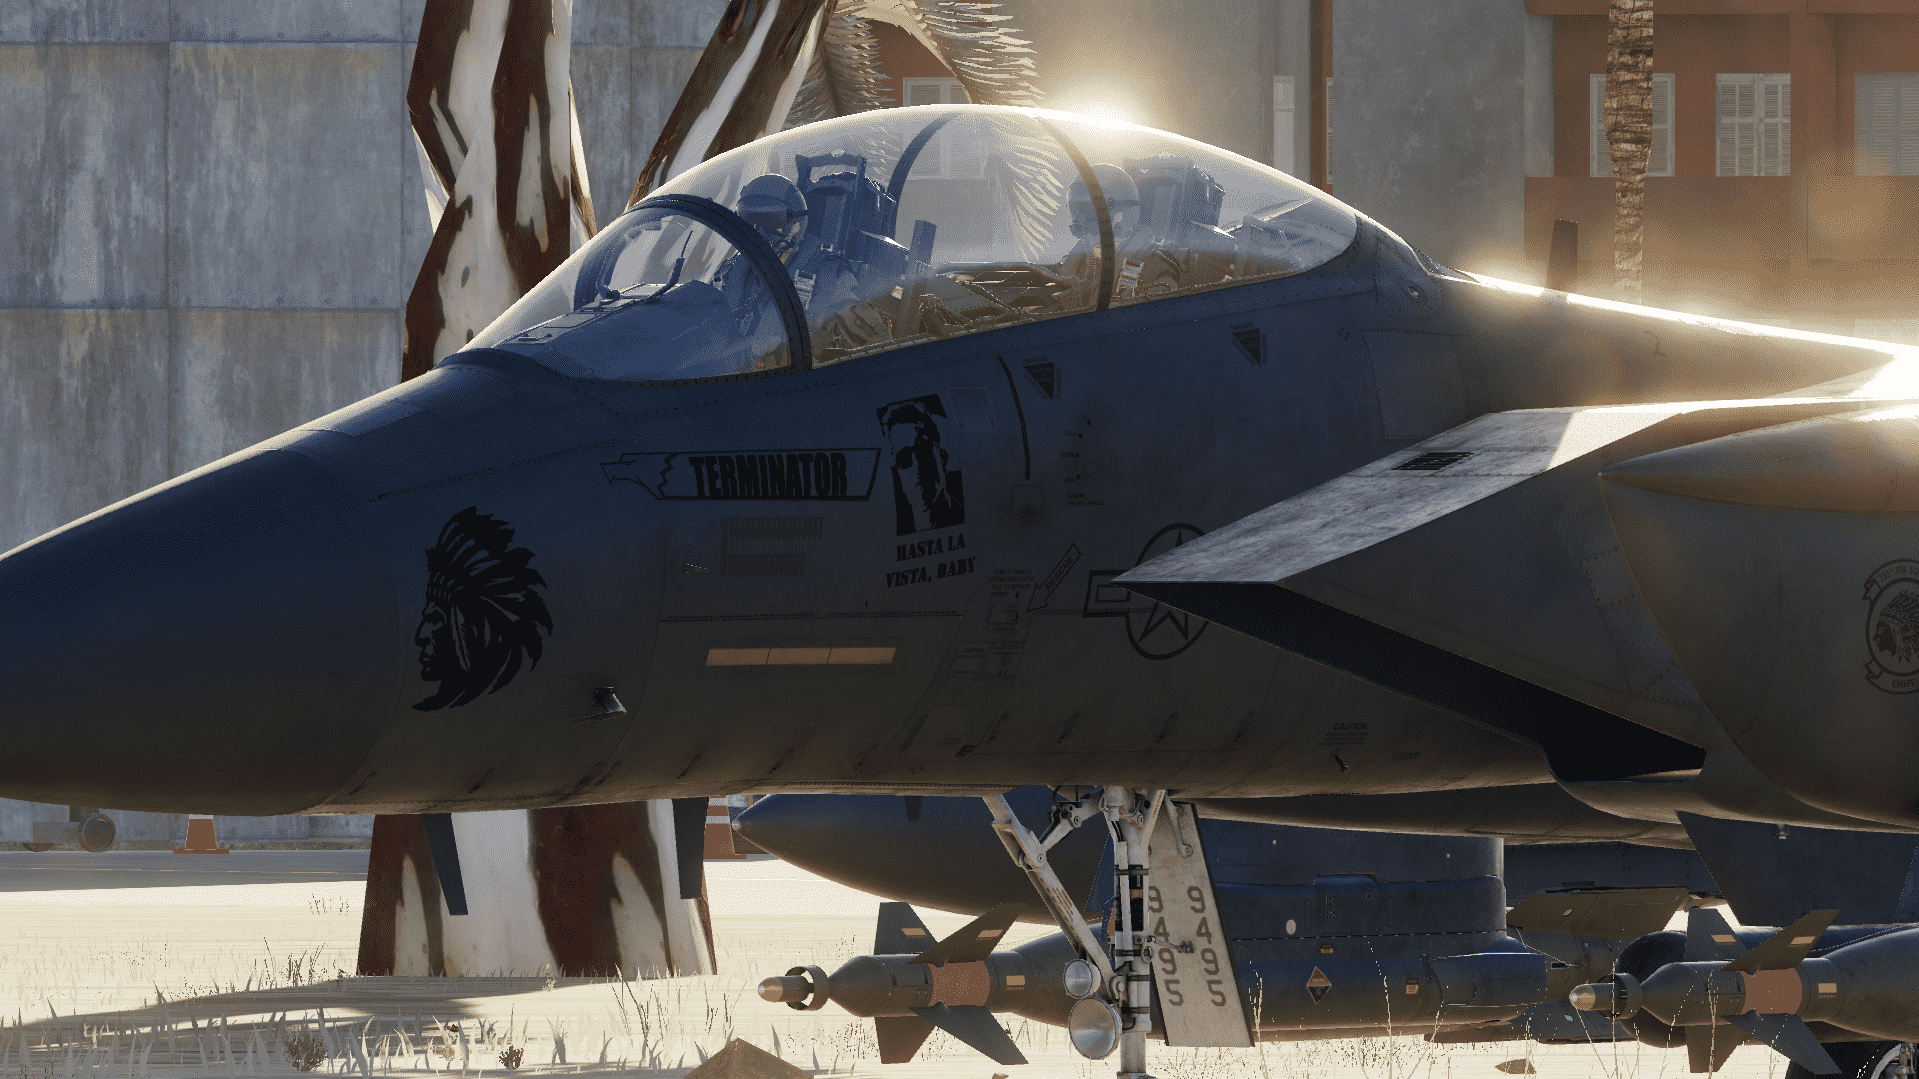 F-15E Strike eagle SJ 89-495 "Terminator"